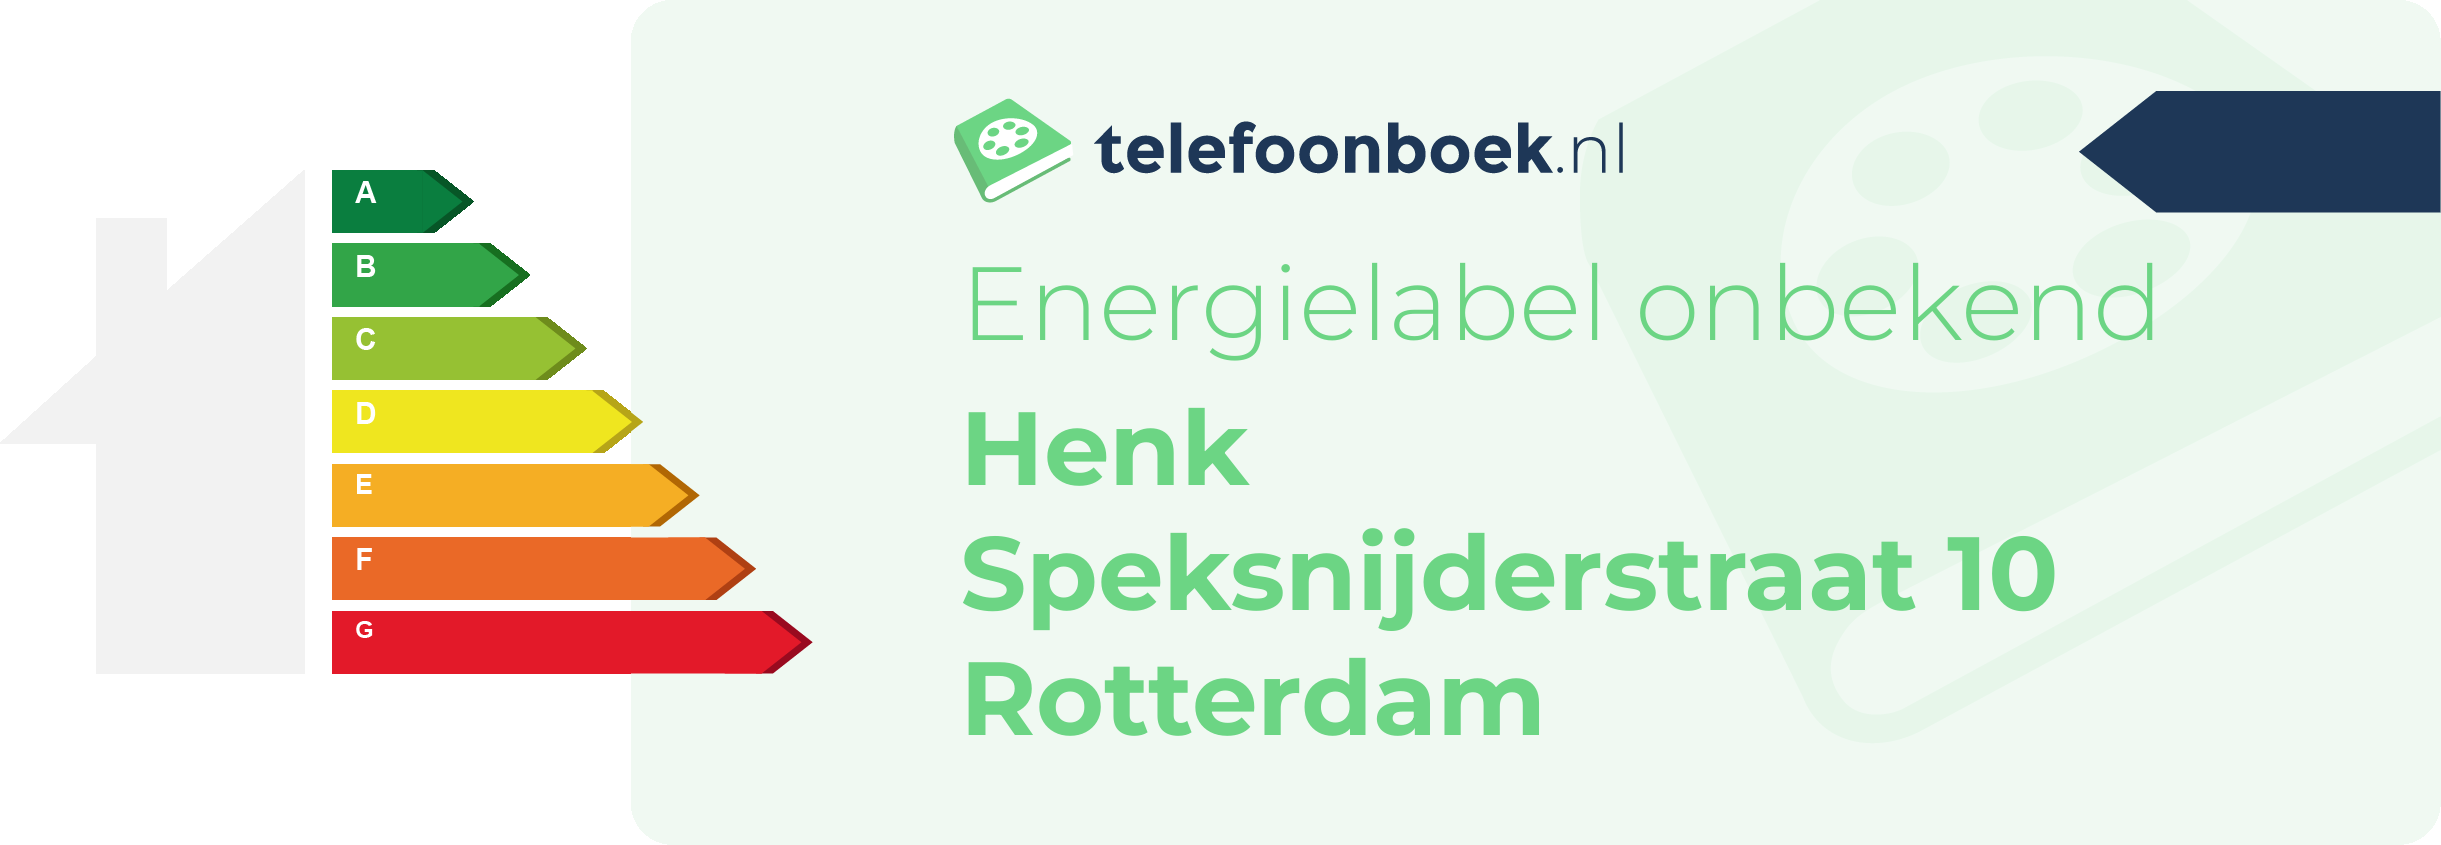 Energielabel Henk Speksnijderstraat 10 Rotterdam